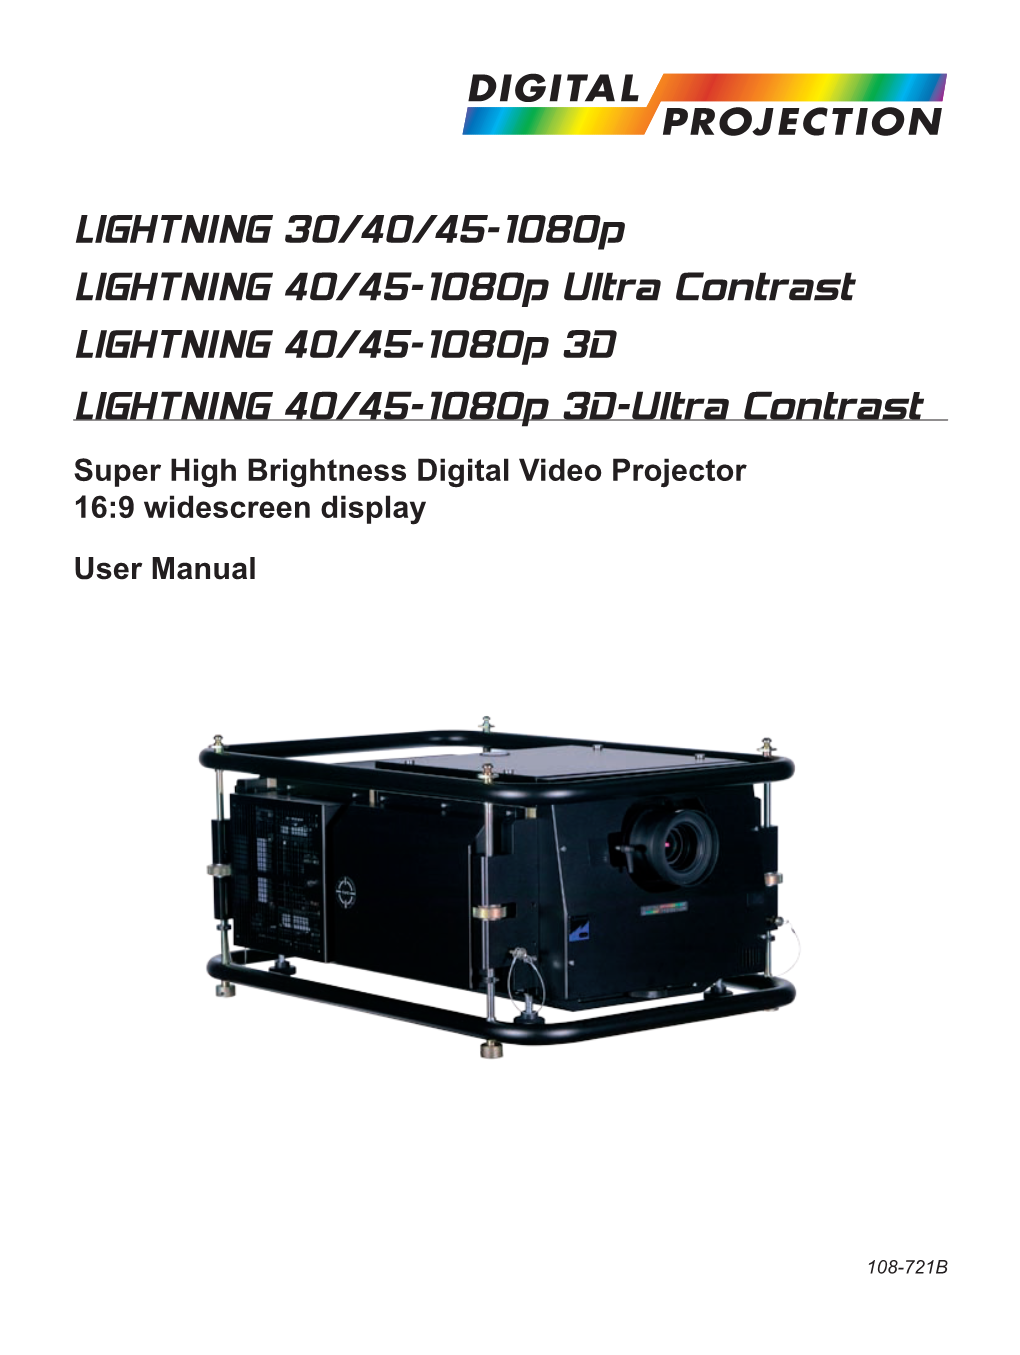 Lightning 30 40 45 1080P Series User Manual.Pdf